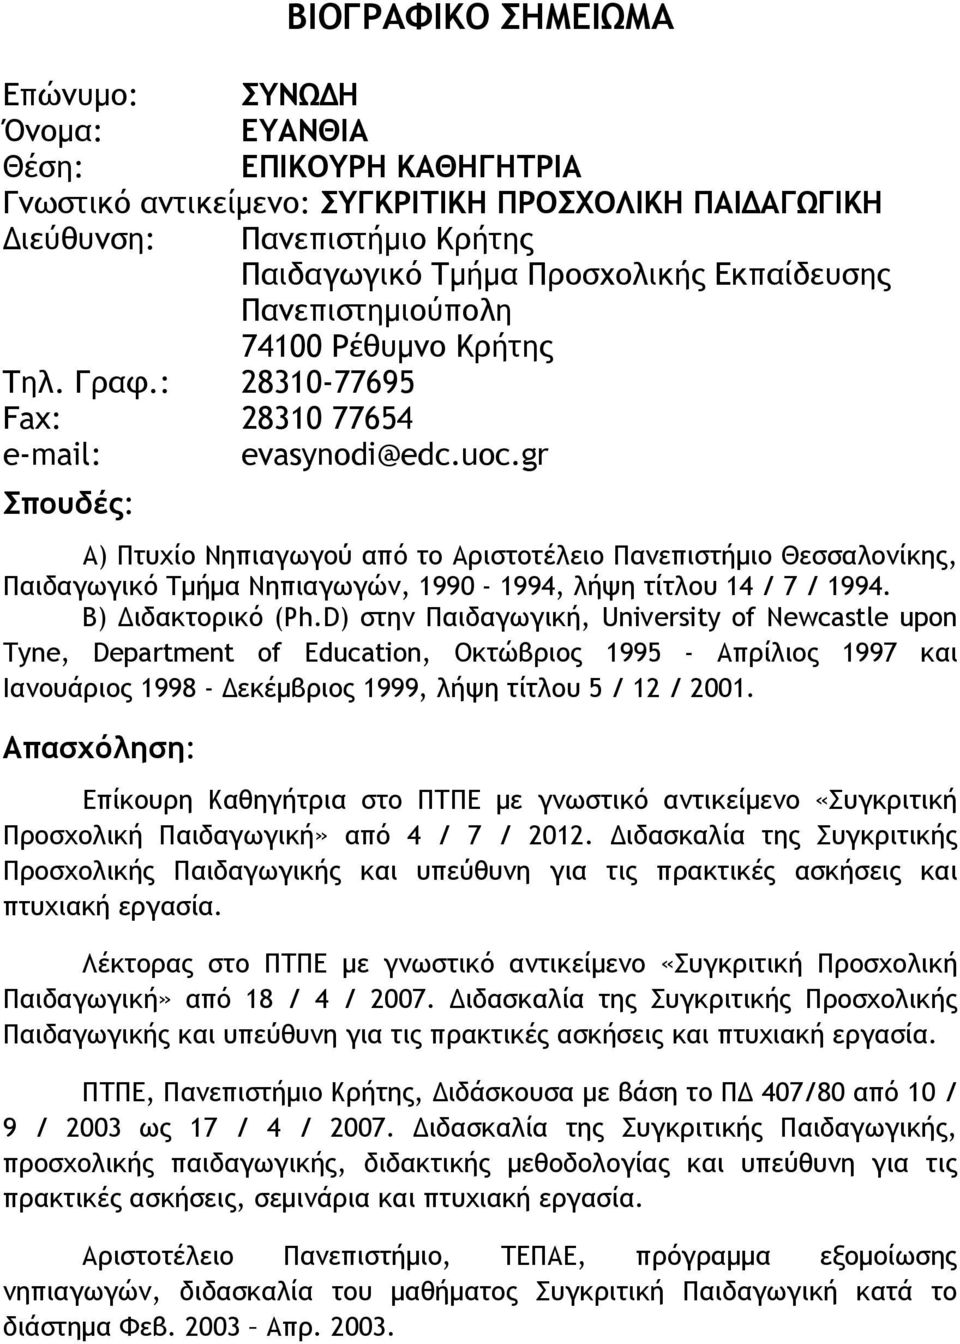 gr Σπουδές: Α) Πτυχίο Νηπιαγωγού από το Αριστοτέλειο Πανεπιστήμιο Θεσσαλονίκης, Παιδαγωγικό Τμήμα Νηπιαγωγών, 1990-1994, λήψη τίτλου 14 / 7 / 1994. Β) Διδακτορικό (Ph.